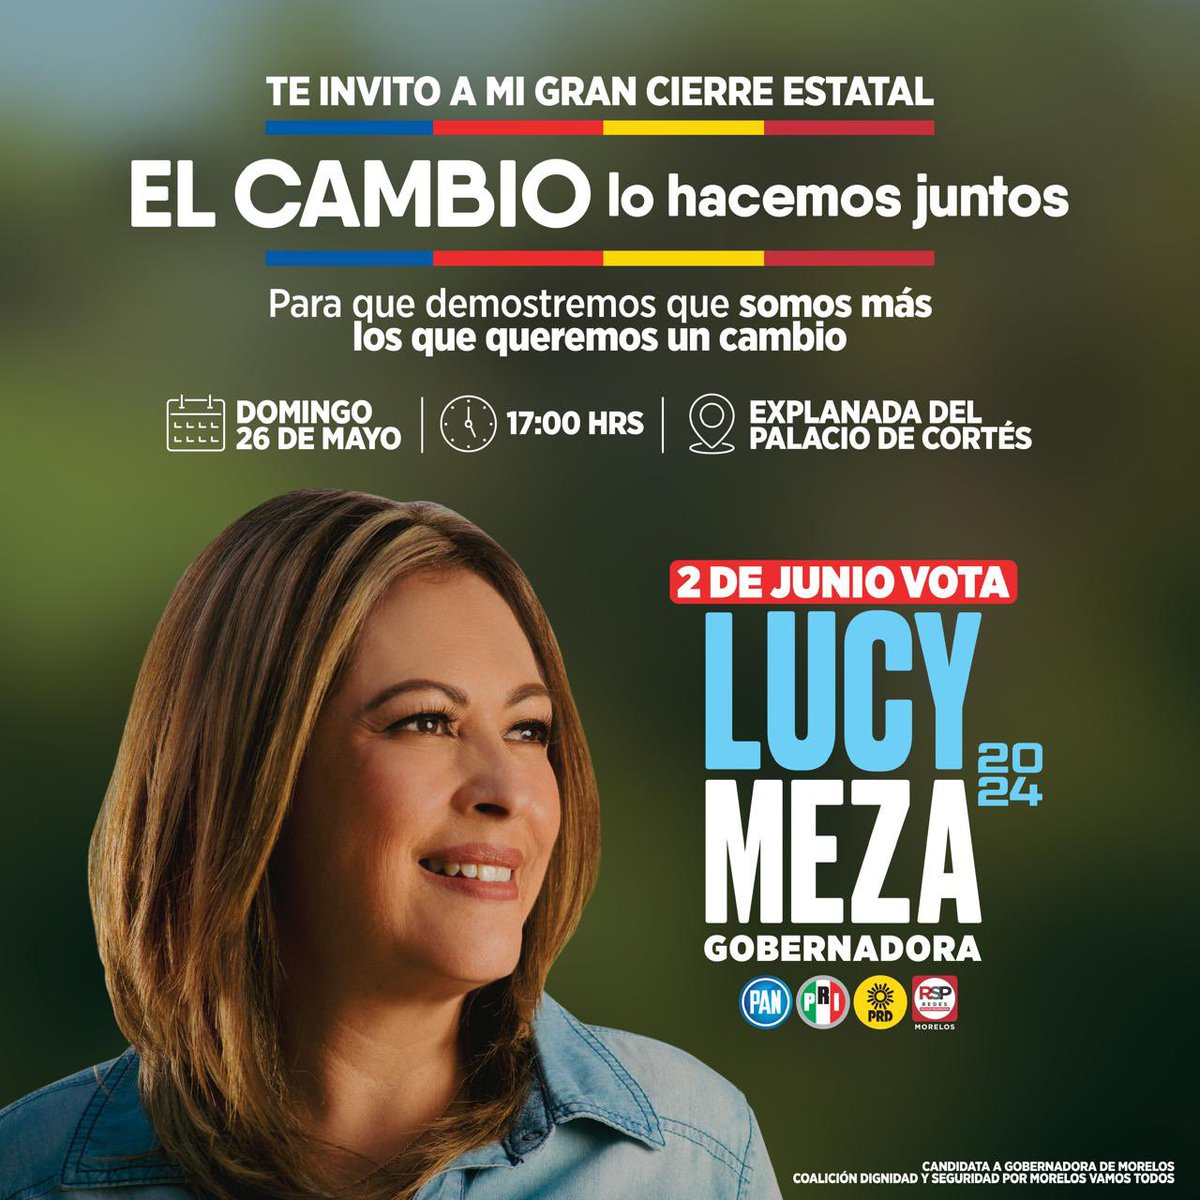 ¡Estoy emocionada y feliz de haber recorrido todo #Morelos con gran éxito! Ha sido un camino increíble, lleno de apoyo y entusiasmo en este proyecto donde todos cabemos. Te invito este domingo a nuestro gran cierre de campaña. ¡No faltes! 🌟📷 #ElCambioNadieLoPara #VotaLucyMeza